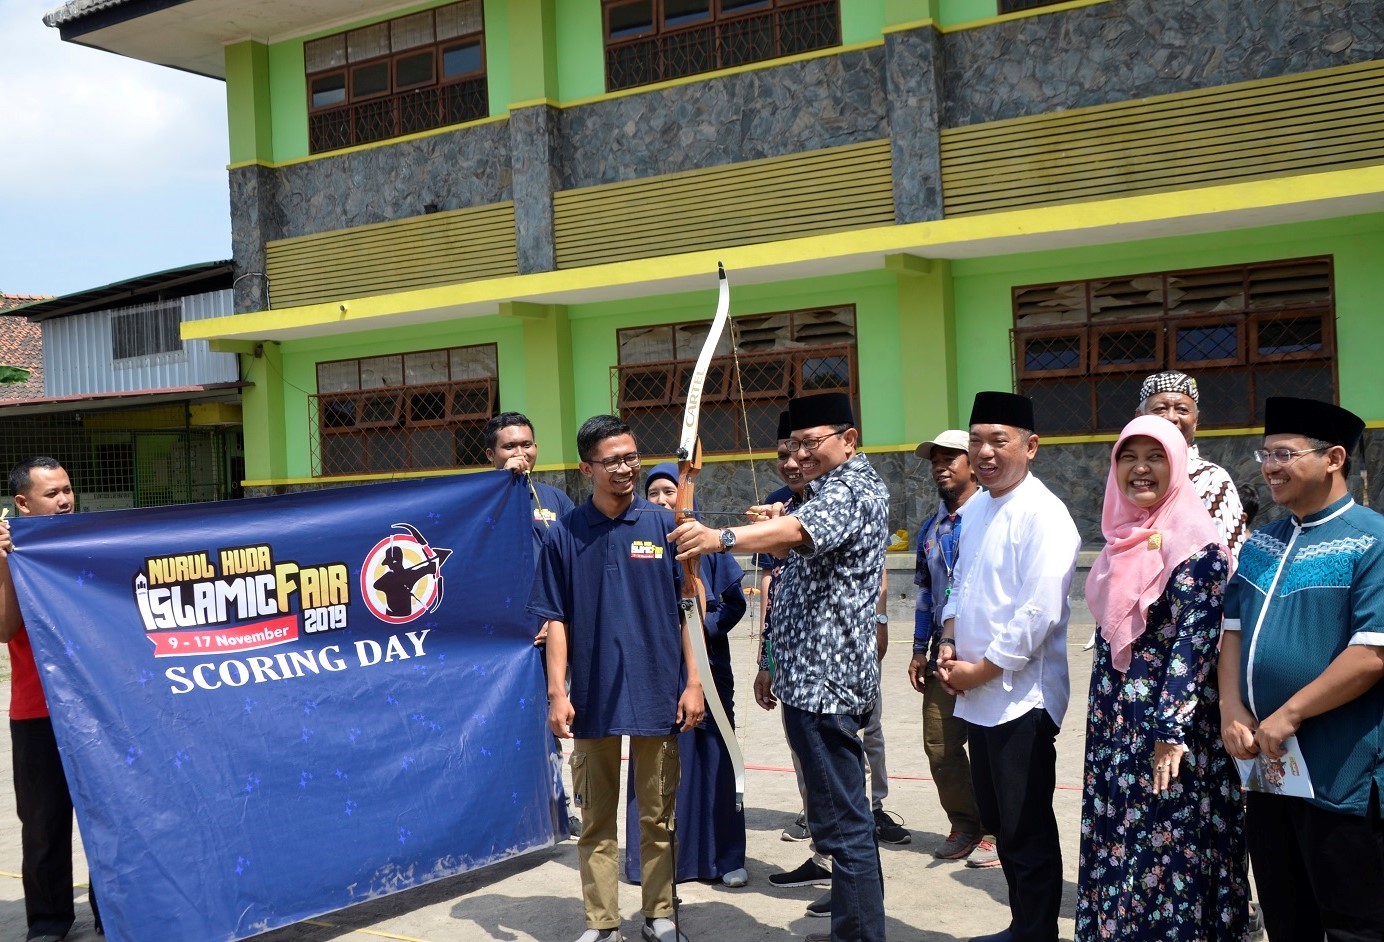 Wakil Walikota Yogyakarta membuka  Nurul Huda Islamic Fair 2019